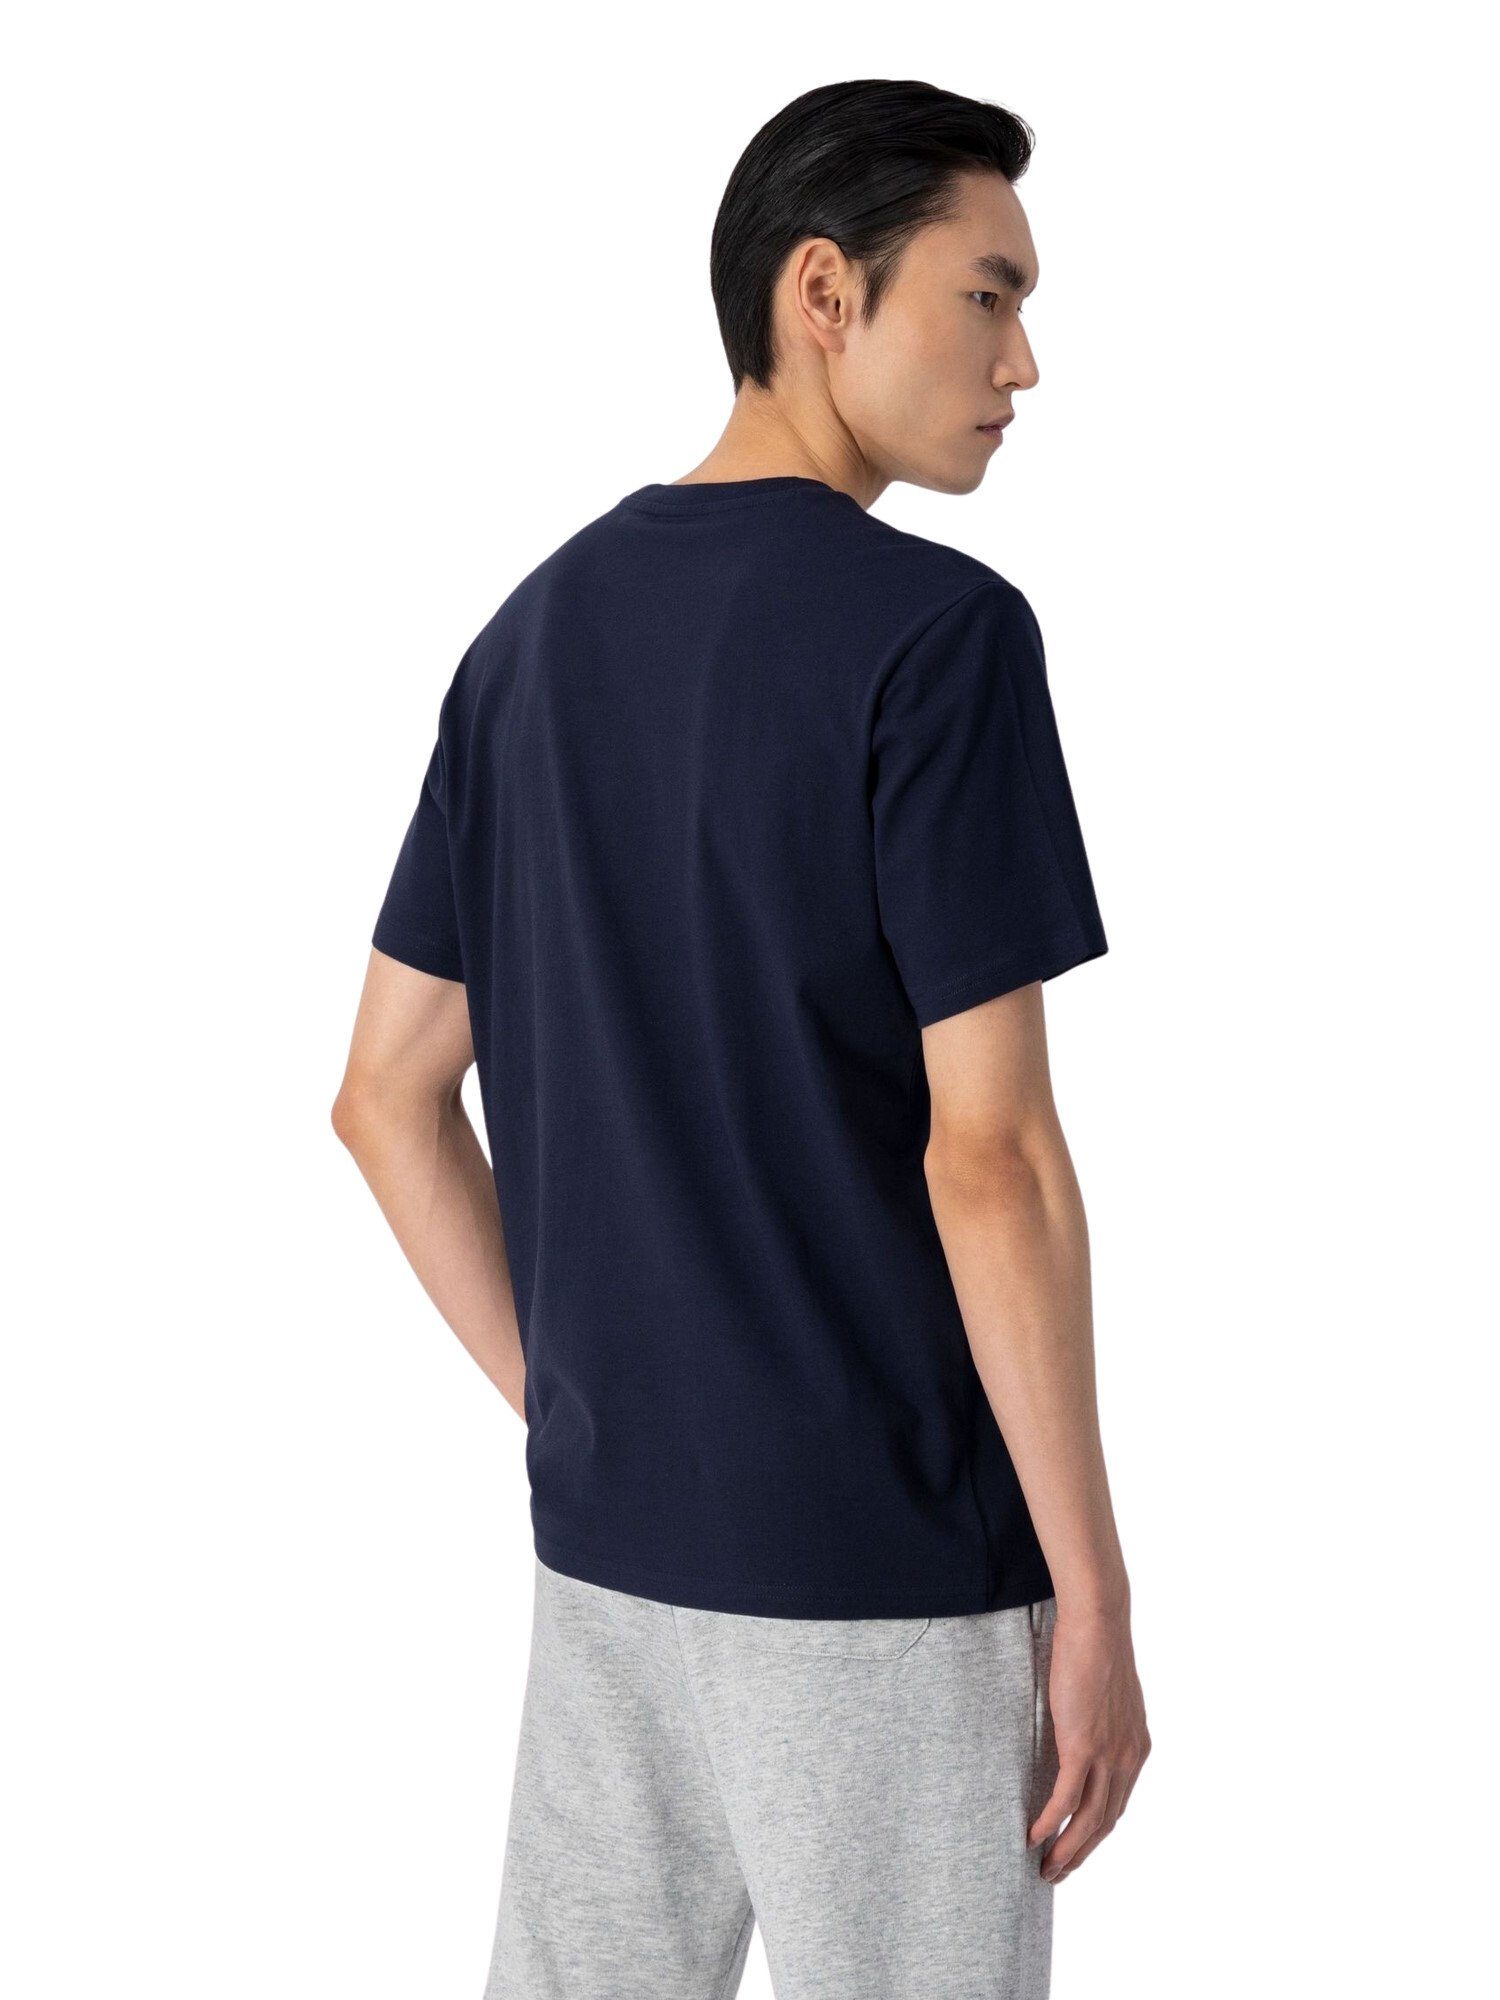 Baumwolle mit Champion dunkelblau Shirt Rundhals-T-Shirt T-Shirt aus